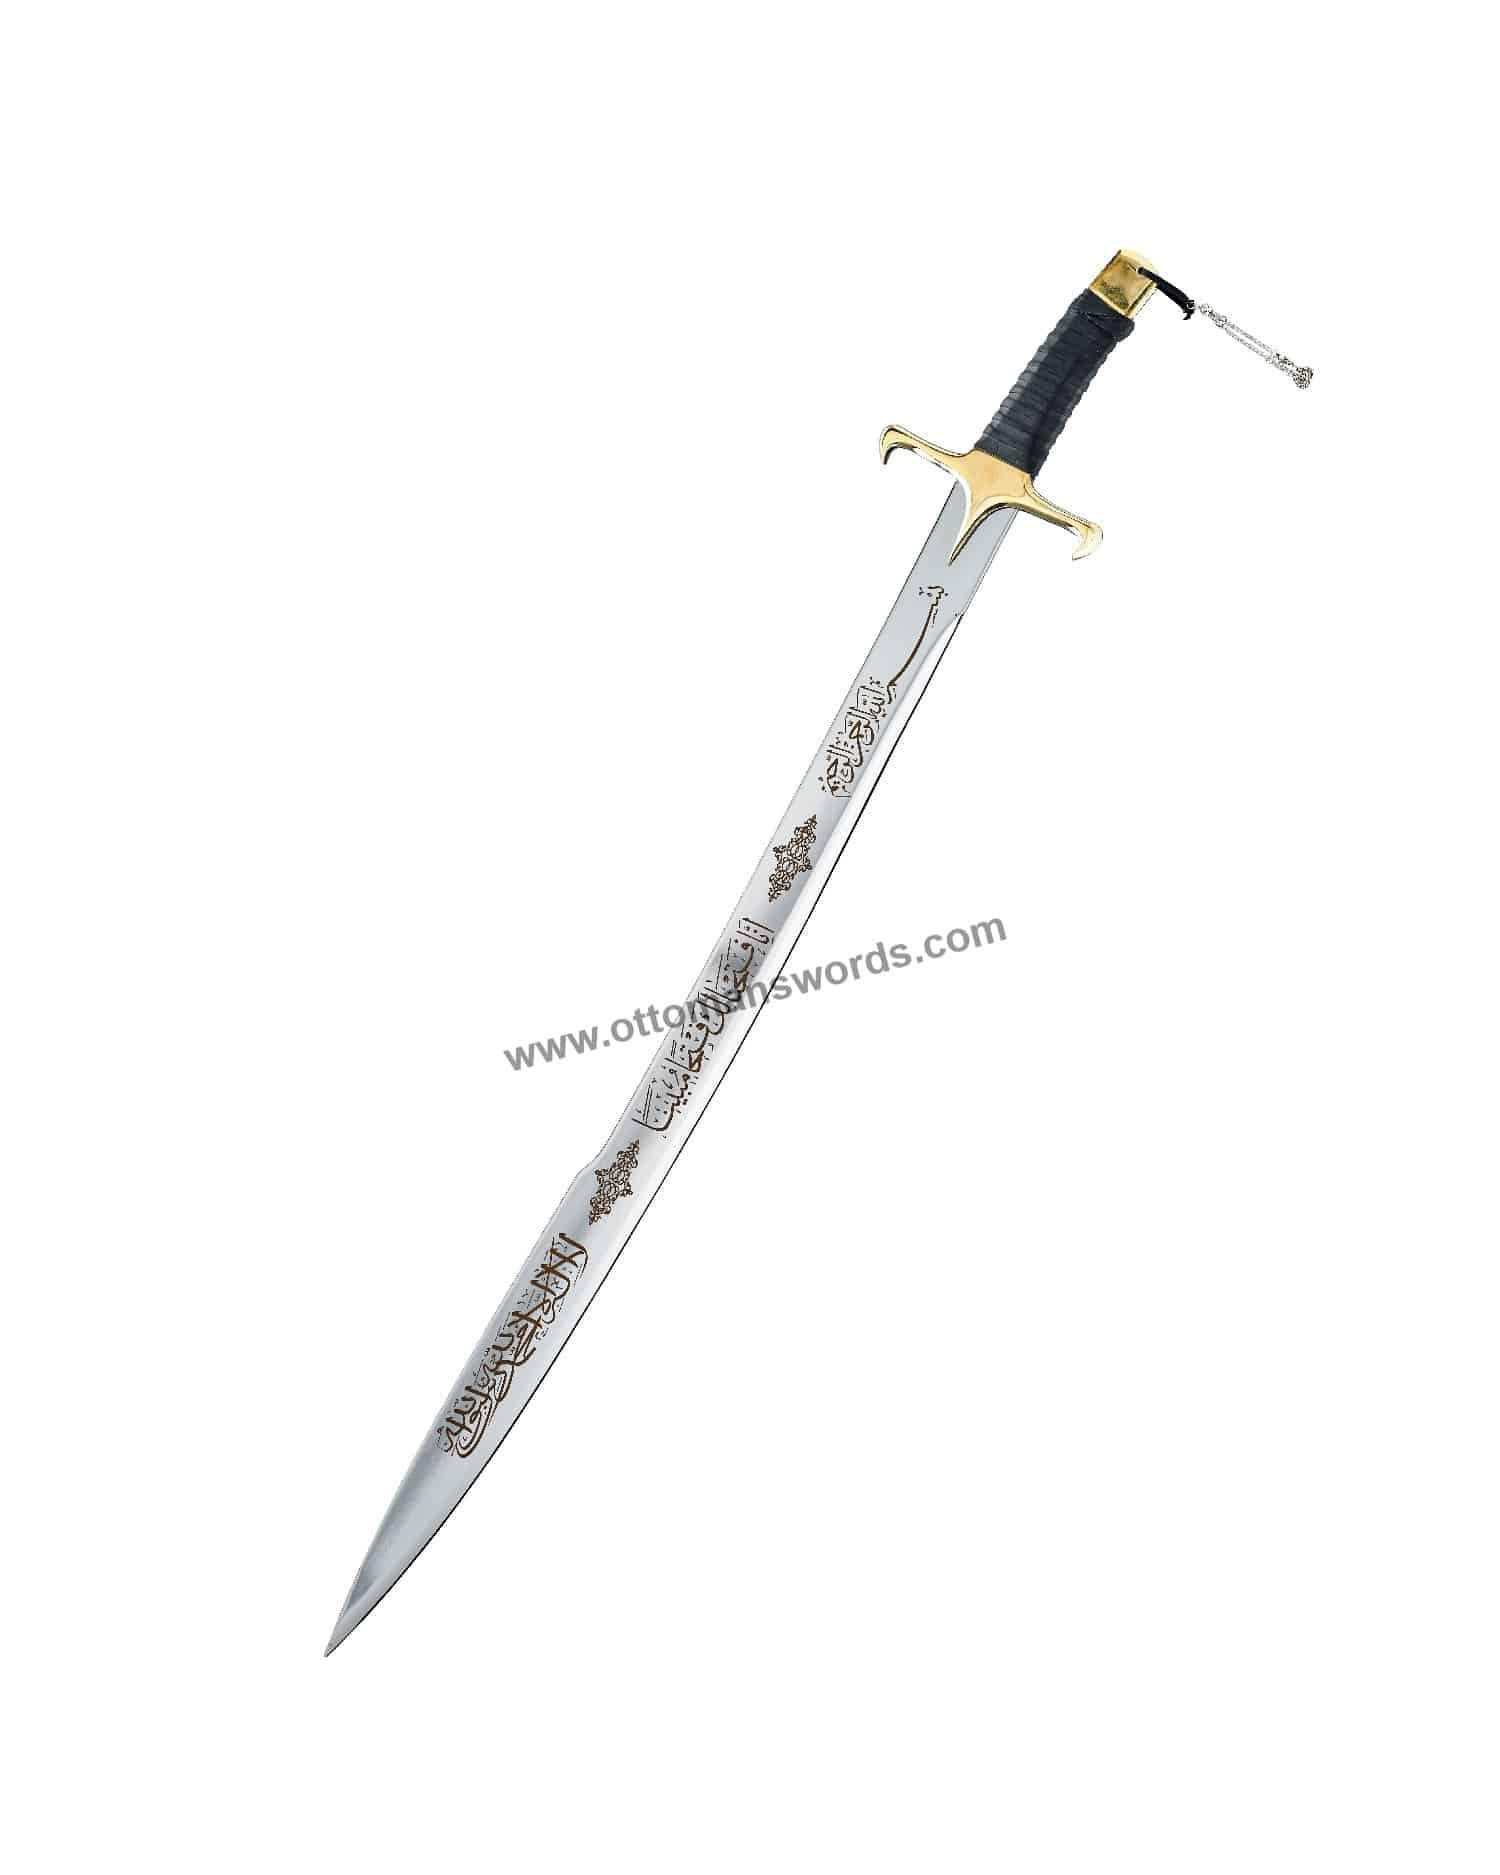 ertugrul sword